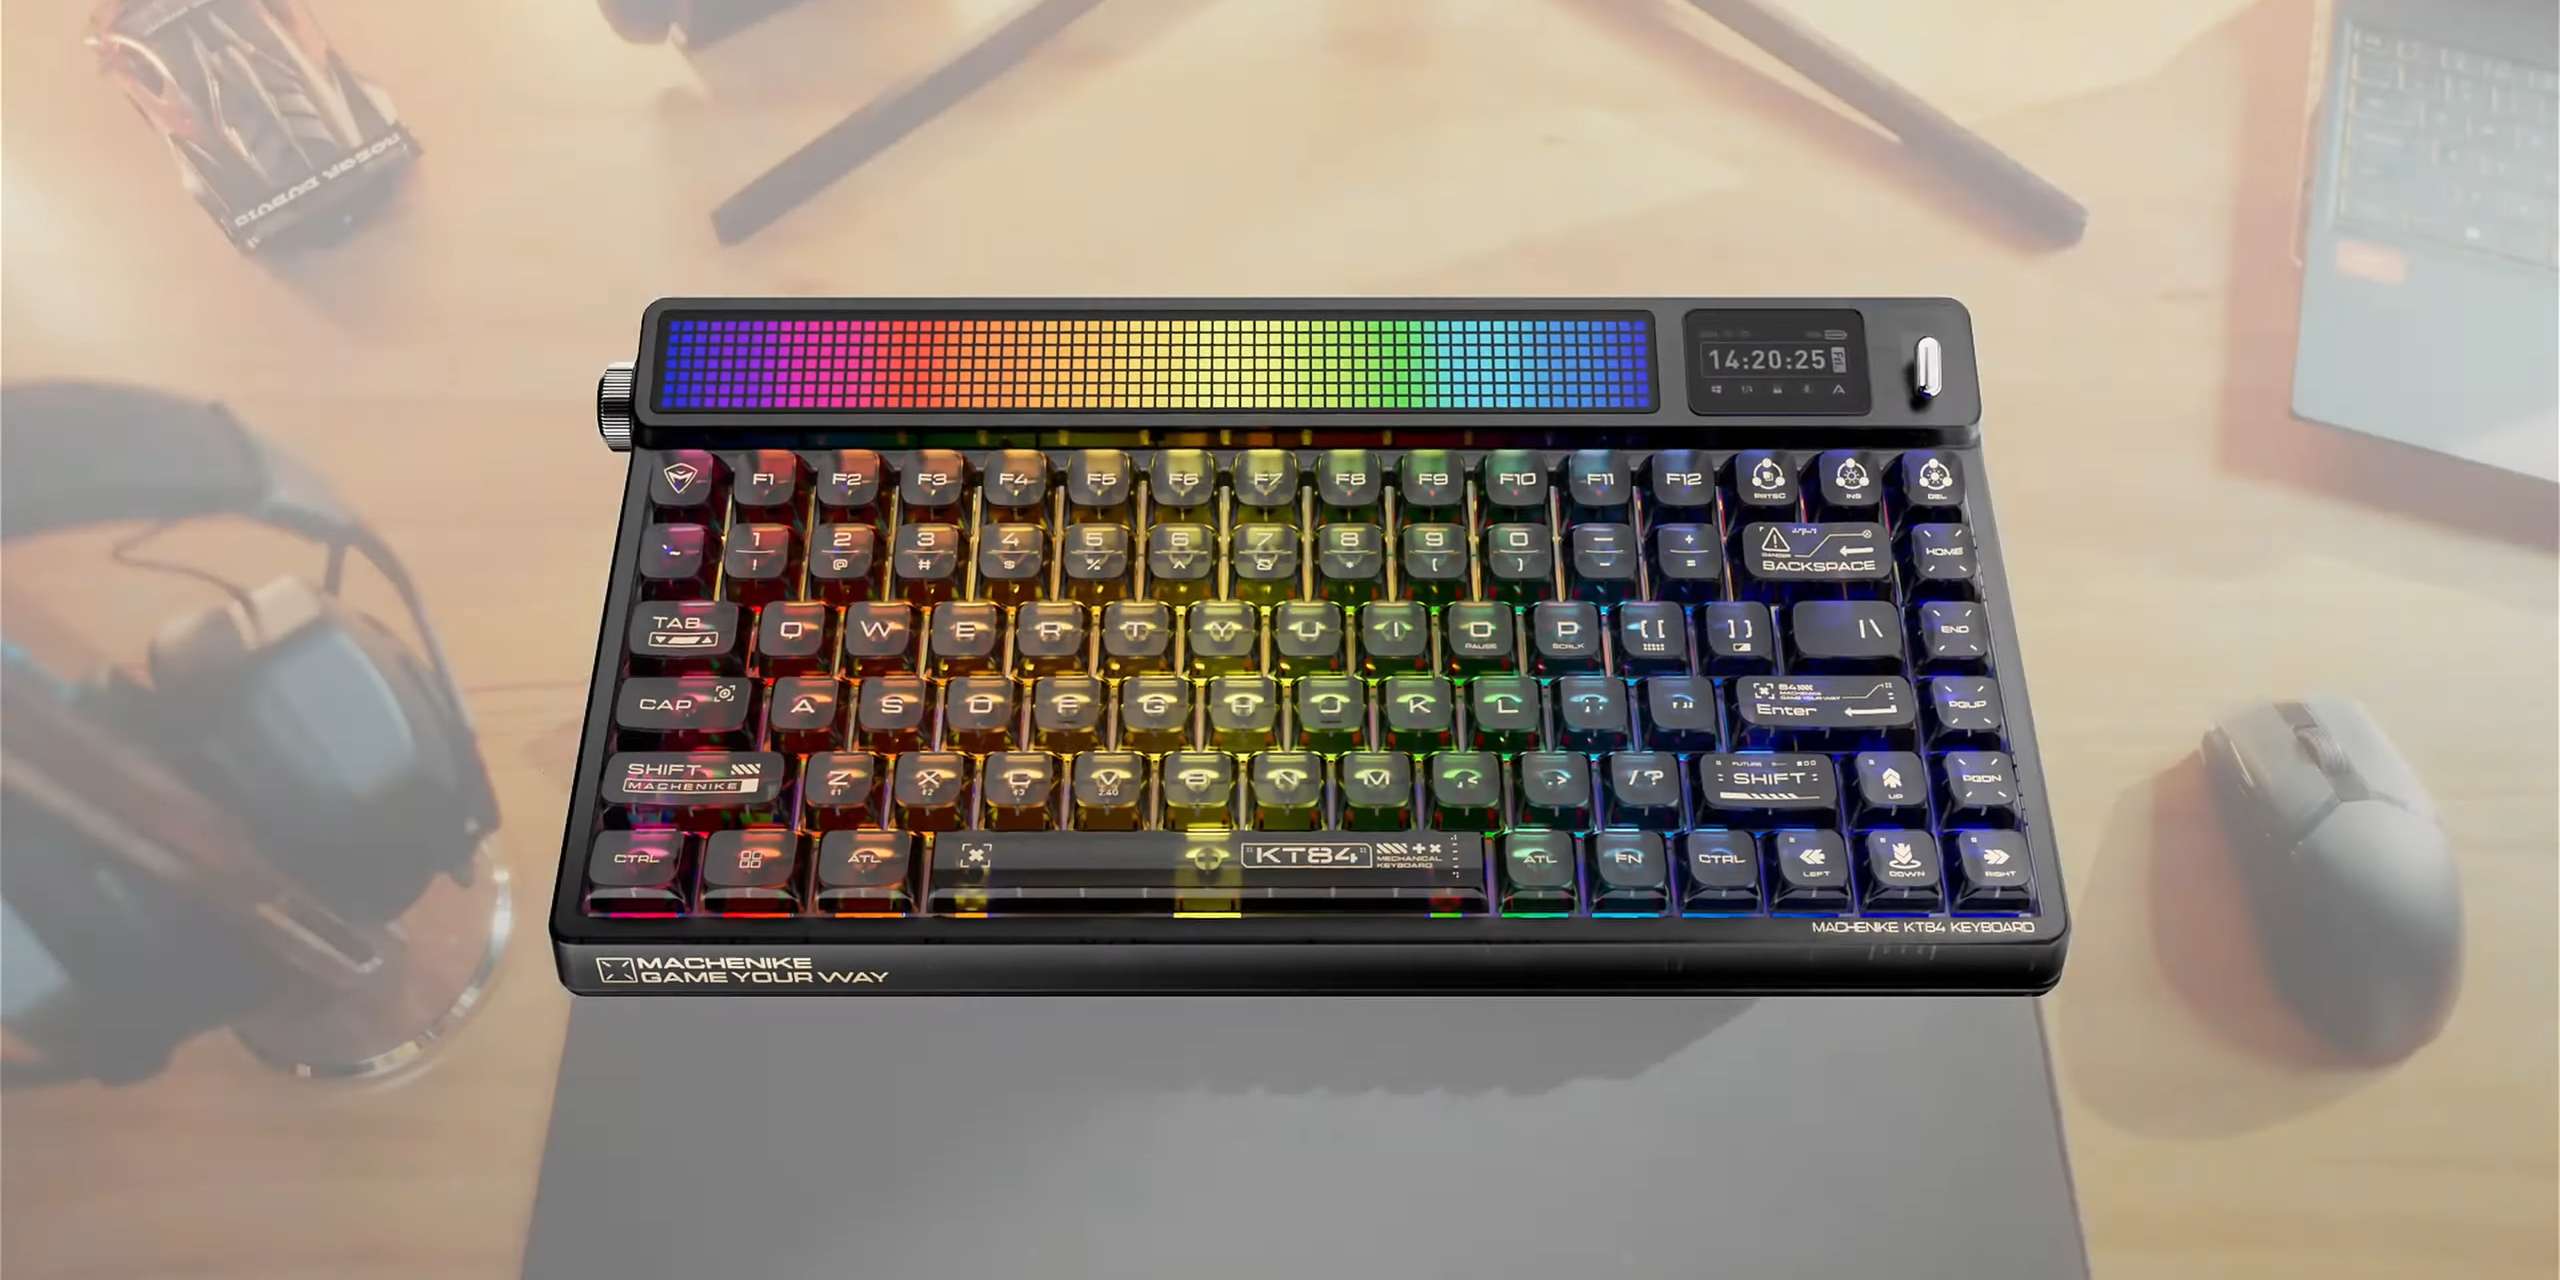 Представлена яркая ретро-клавиатура Machenike KT84 с пиксельным экраном и RGB-подсветкой